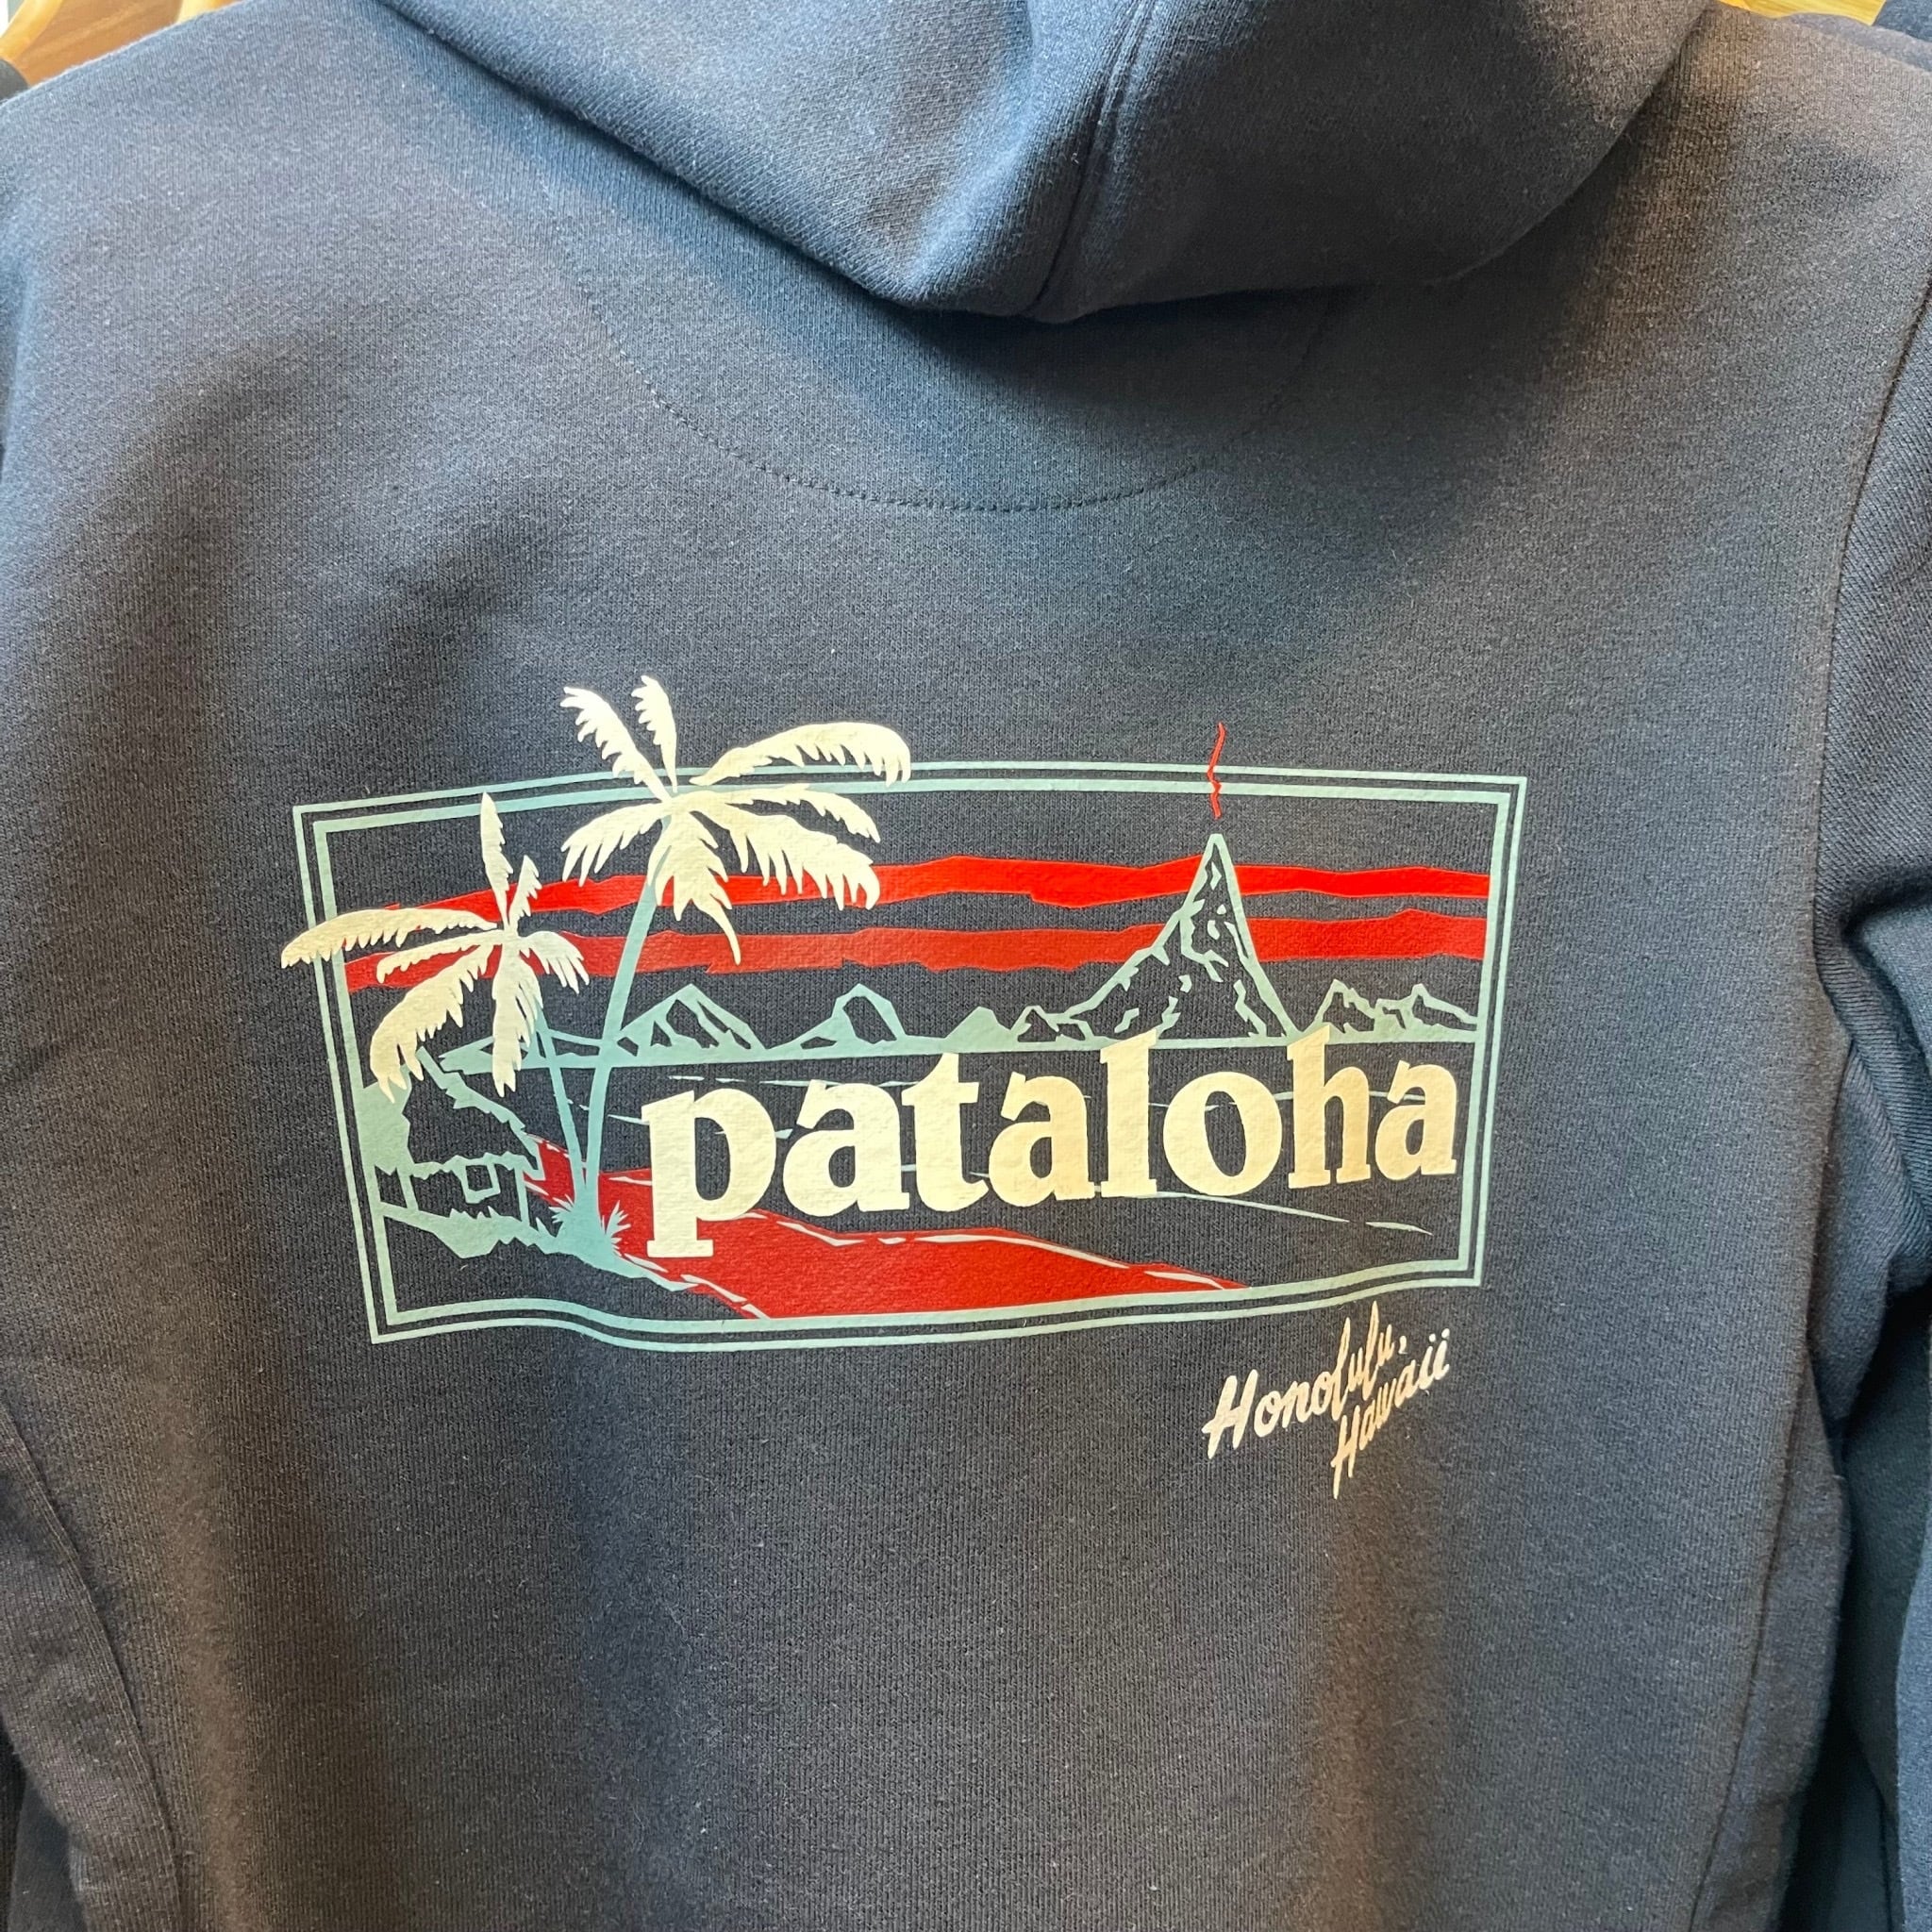 Pataloha(Patagonia)パーカーM sizeハワイ限定商品 - その他